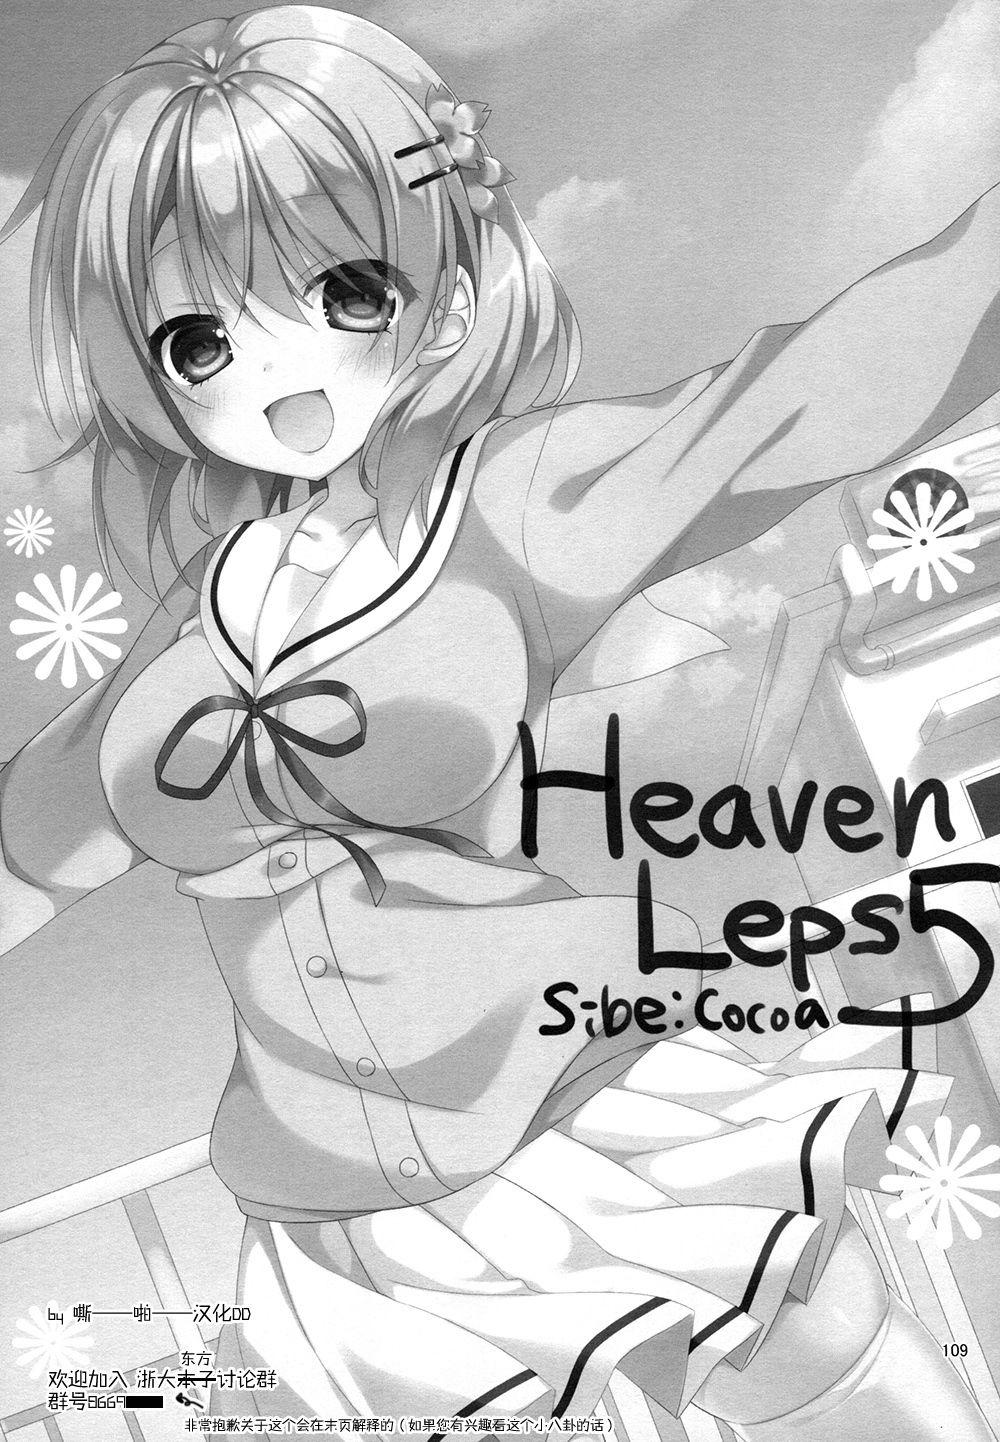 Heaven Lepus5 Side:Cocoa 1